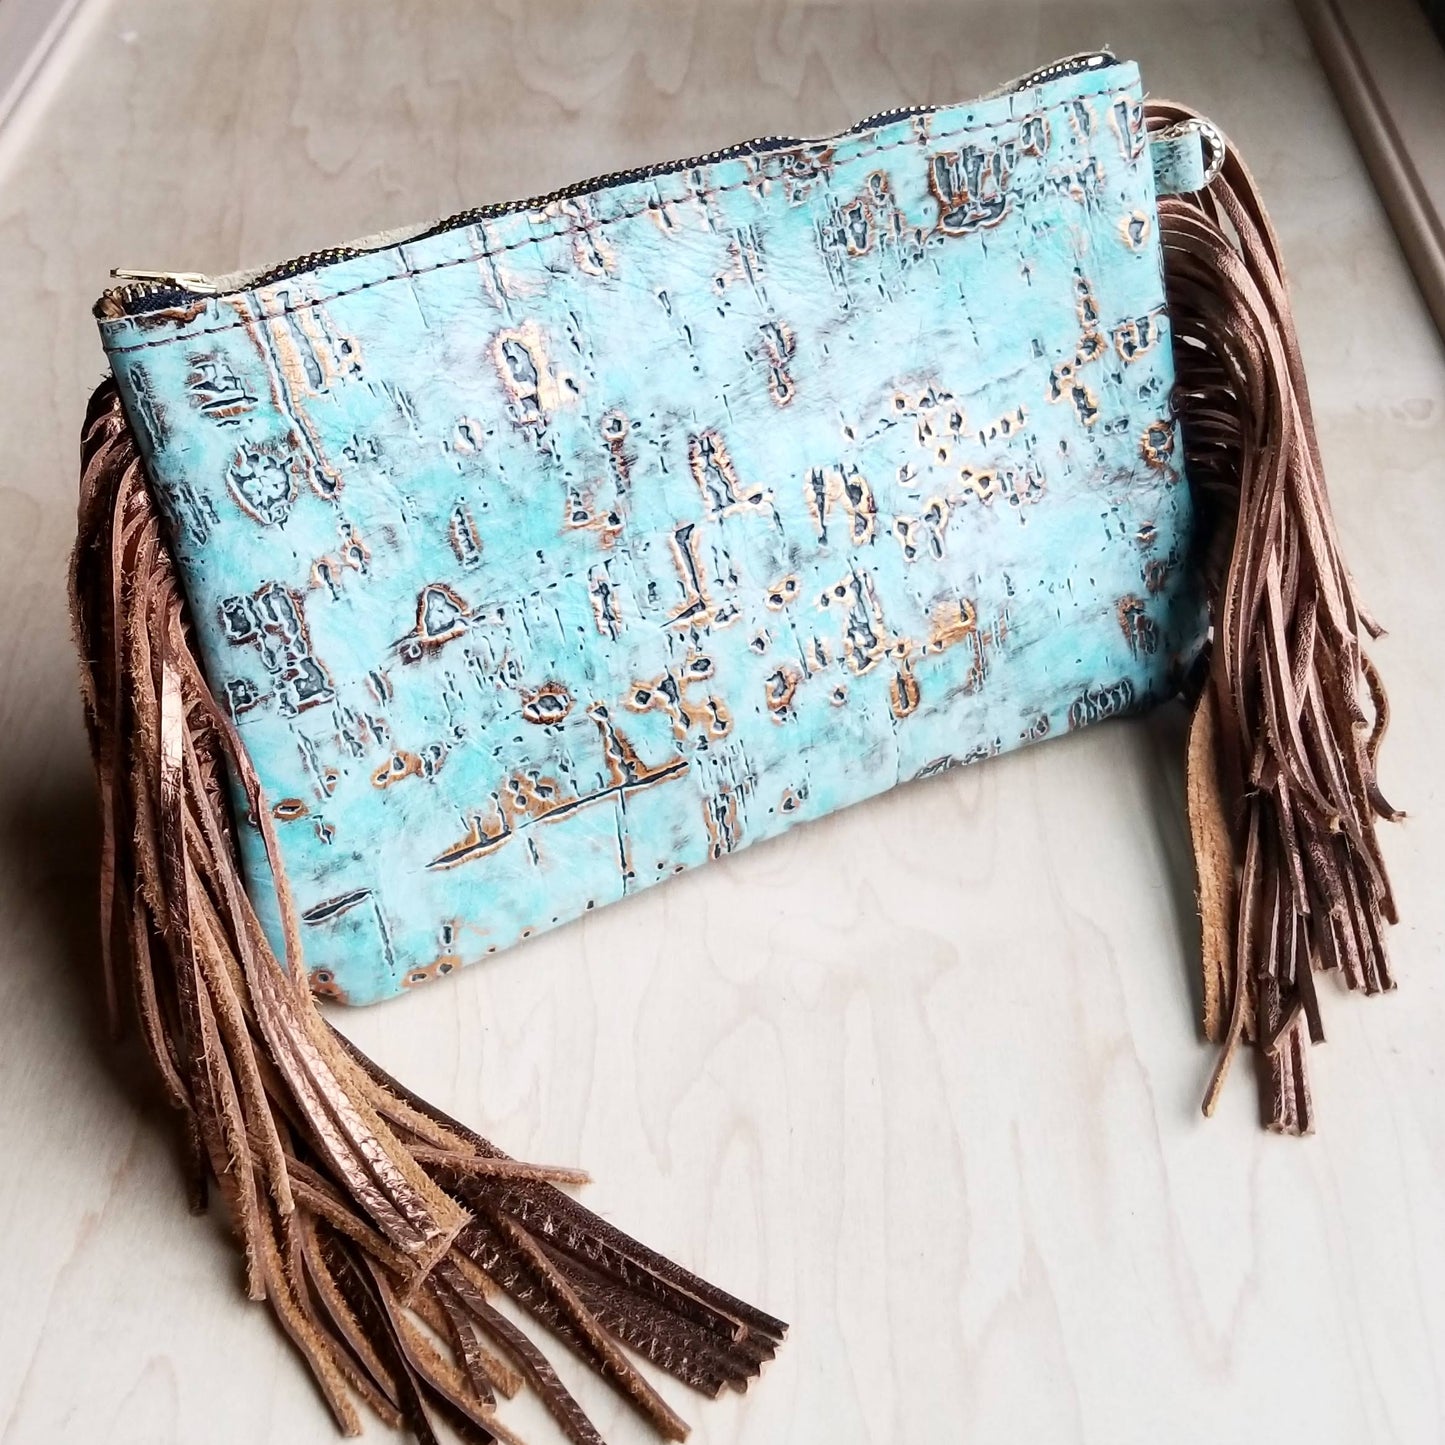 Turquoise Metallic Leather Clutch Handbag 501c